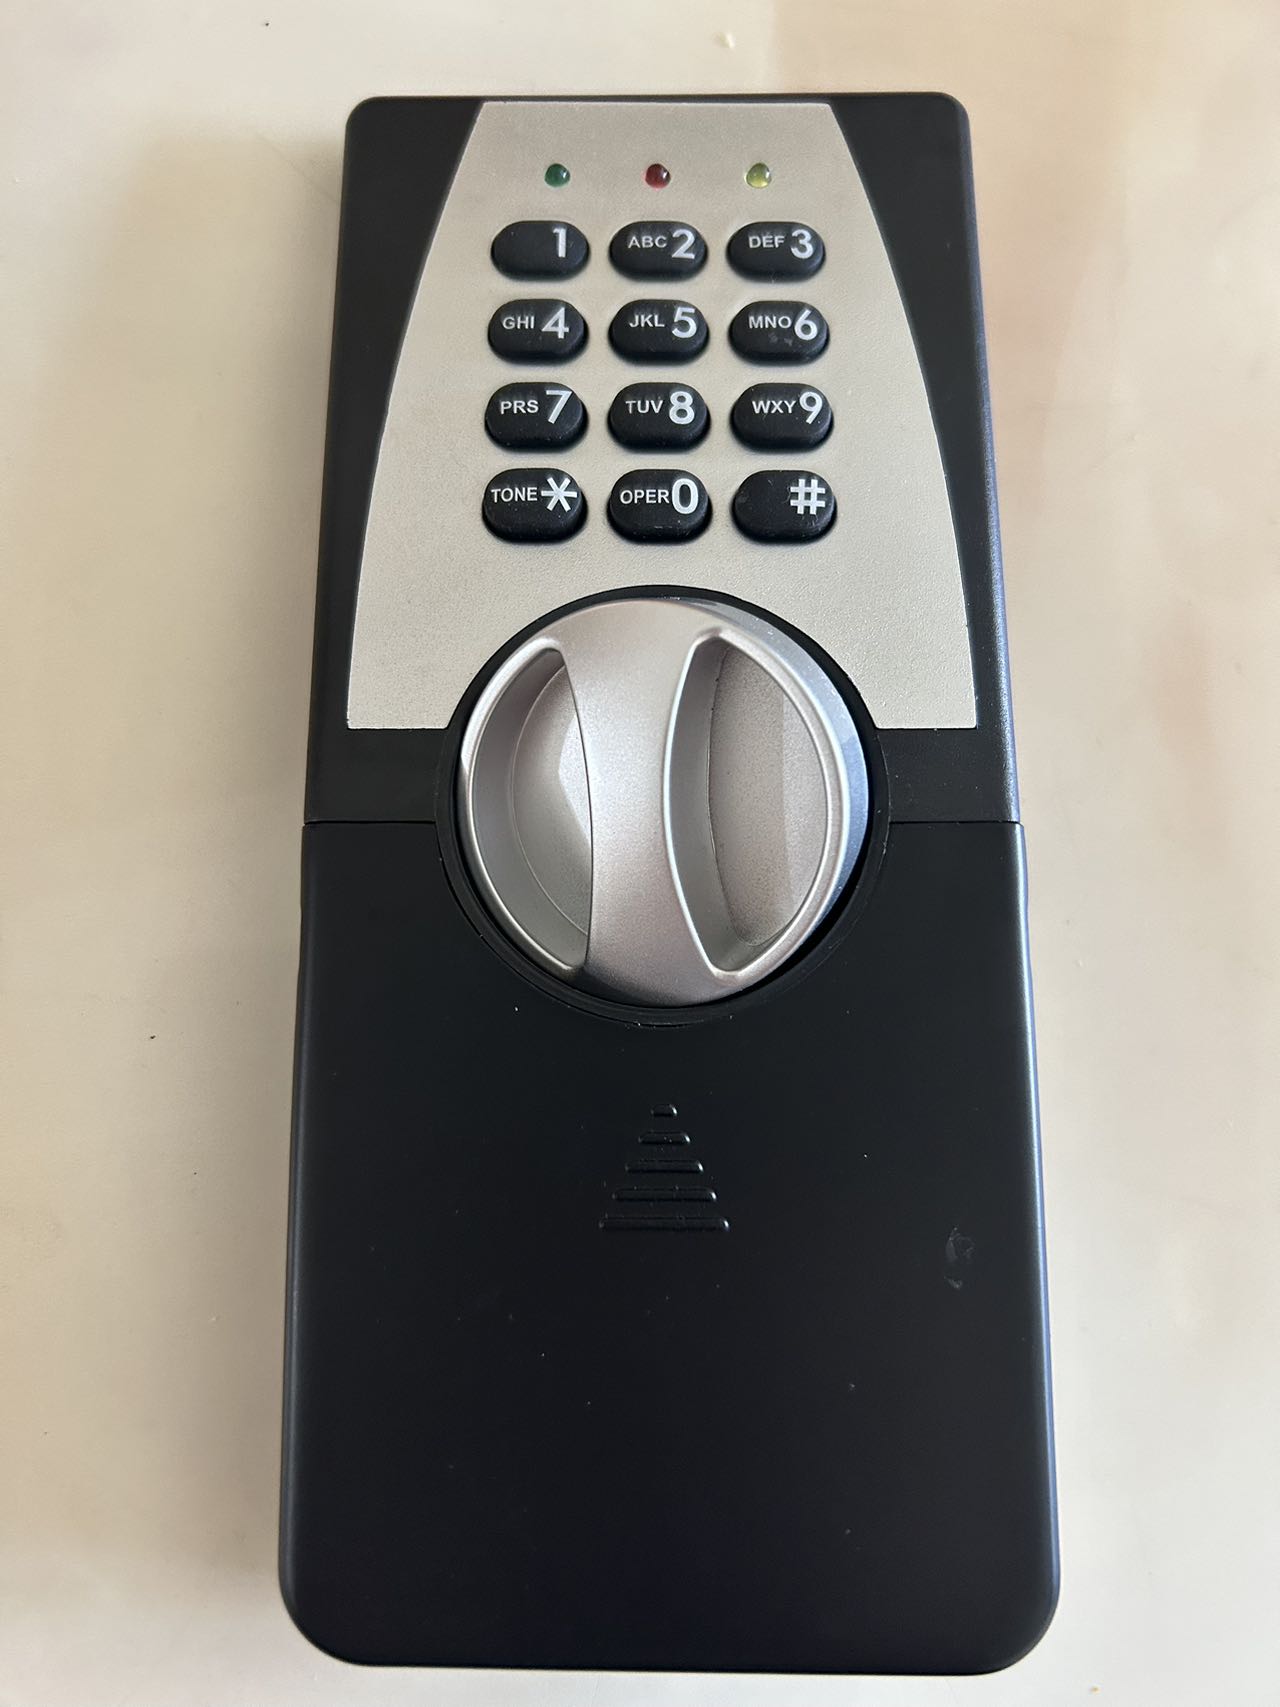 Cerradura segura del teclado de la contraseña digital electrónica de China para la fábrica segura de la oficina en casa del hotel